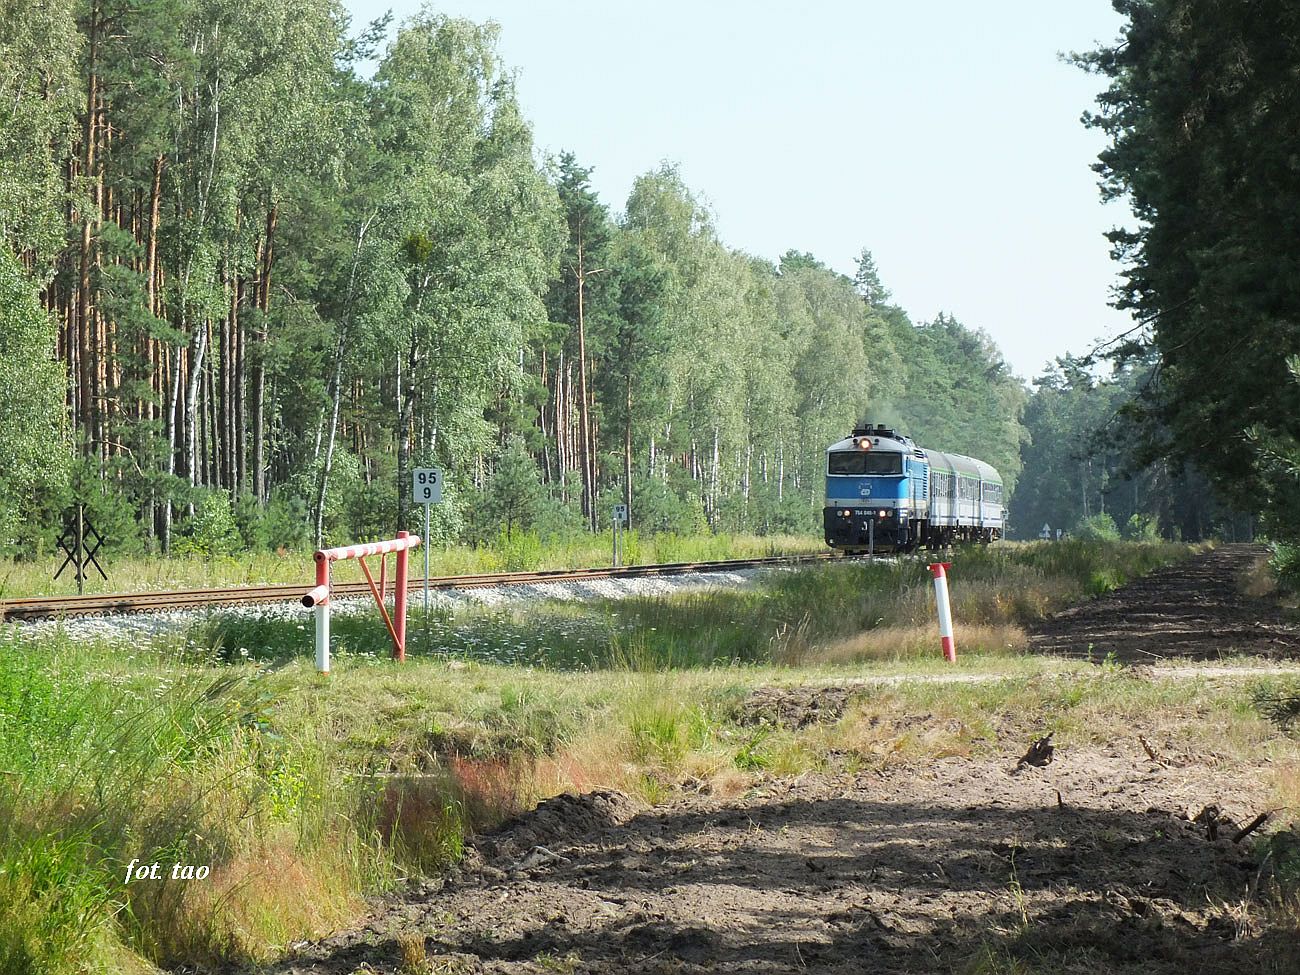 TLK Flisak pędzący do Gdyni. Na fotografii lasy szczutowskie, a pociąg szumi po nowym torowisku, sierpień 2022 r.